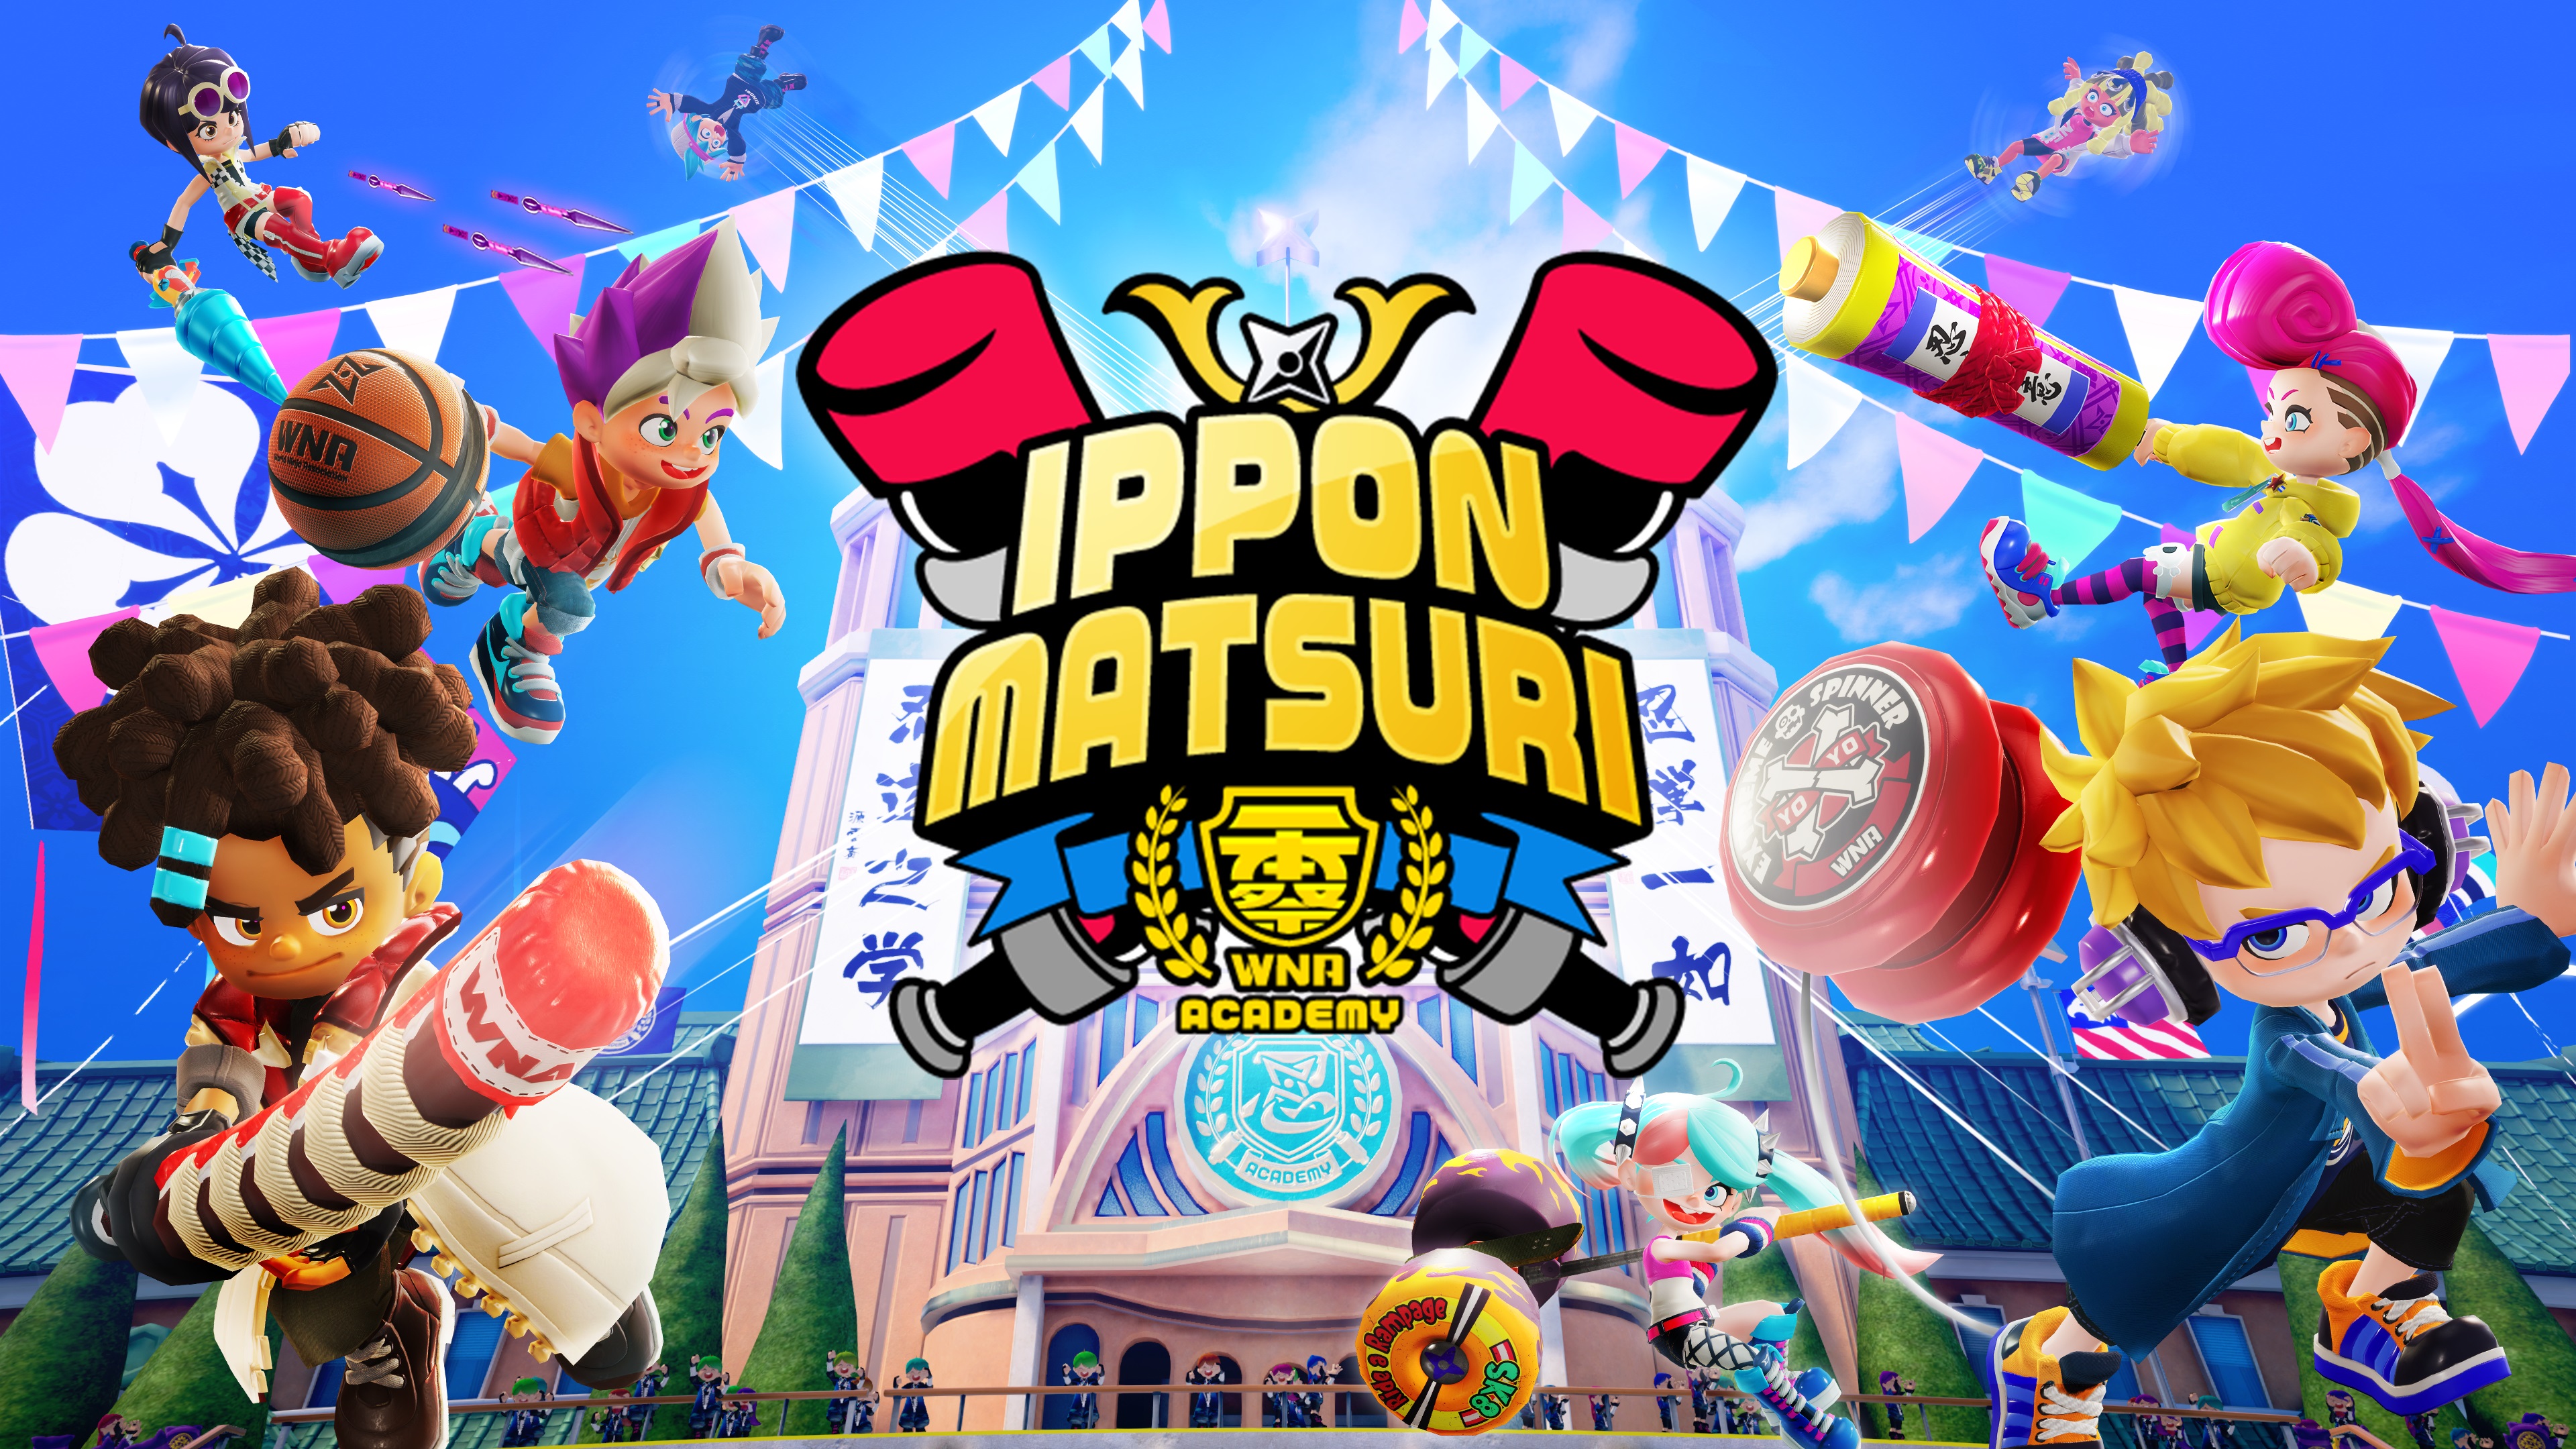 ニンジャラ 初イベント Ippon Matsuri 詳細 1 000ジャラ当たるキャンペーンも Appbank